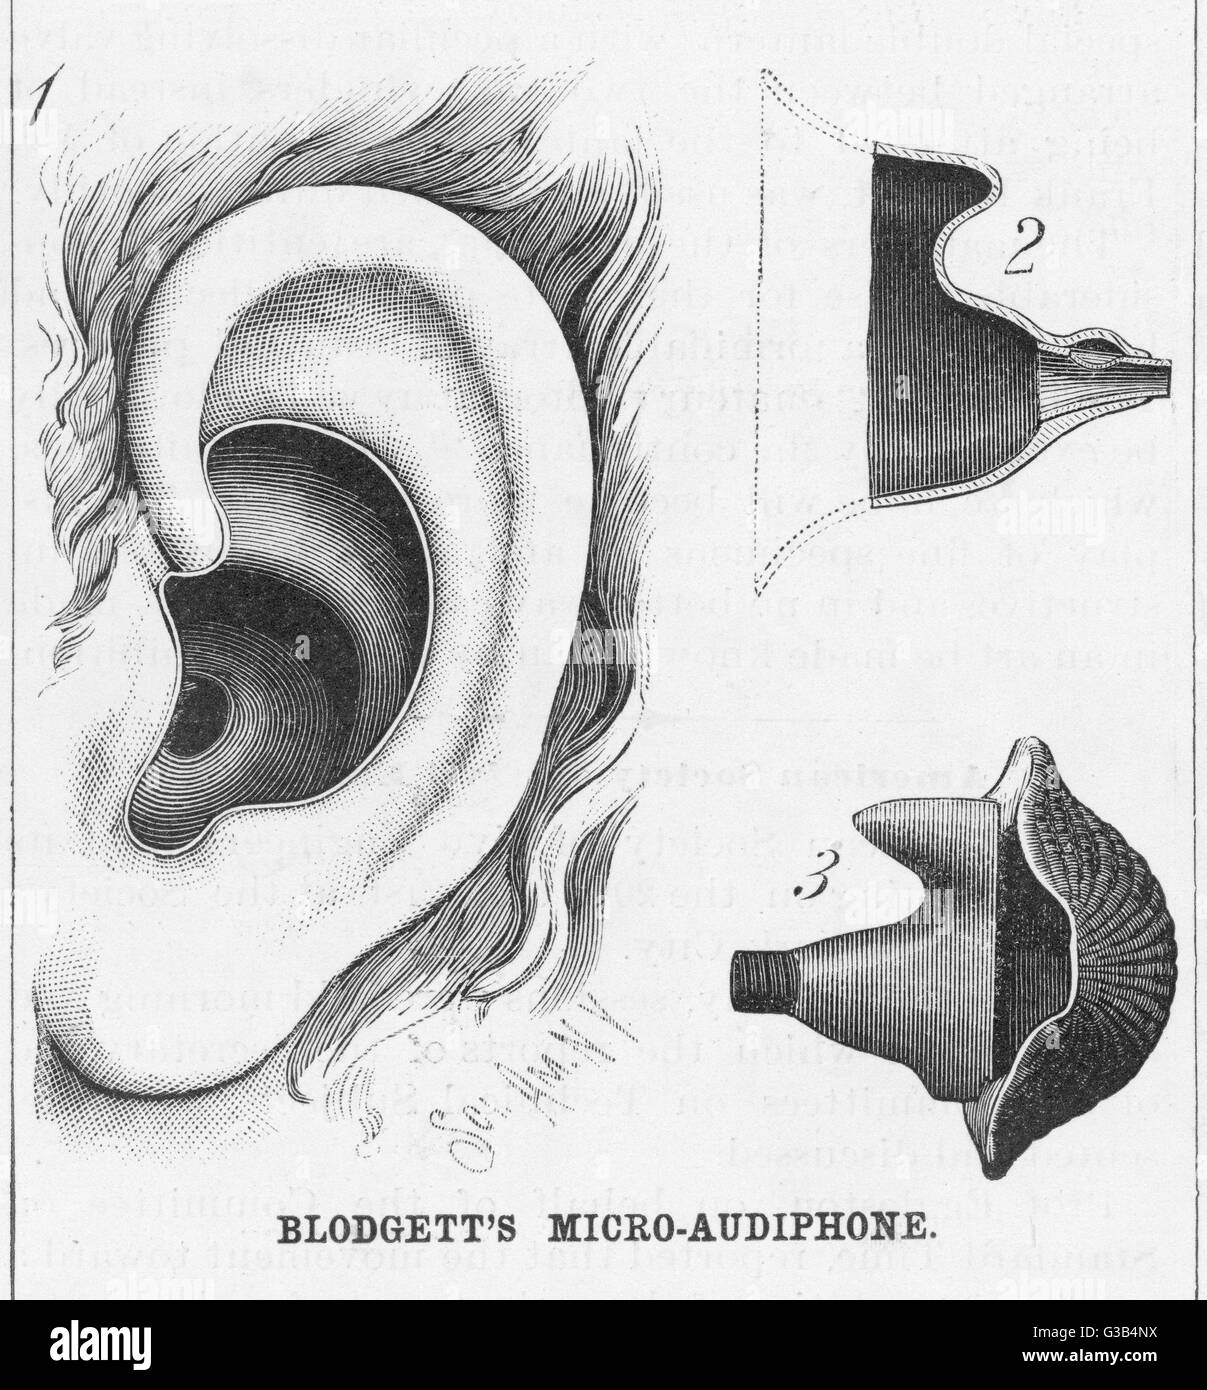 Diagramas para mostrar Blodgett de micro-audiphone audífono y cómo se inserta en el oído Fecha: 1886 Foto de stock